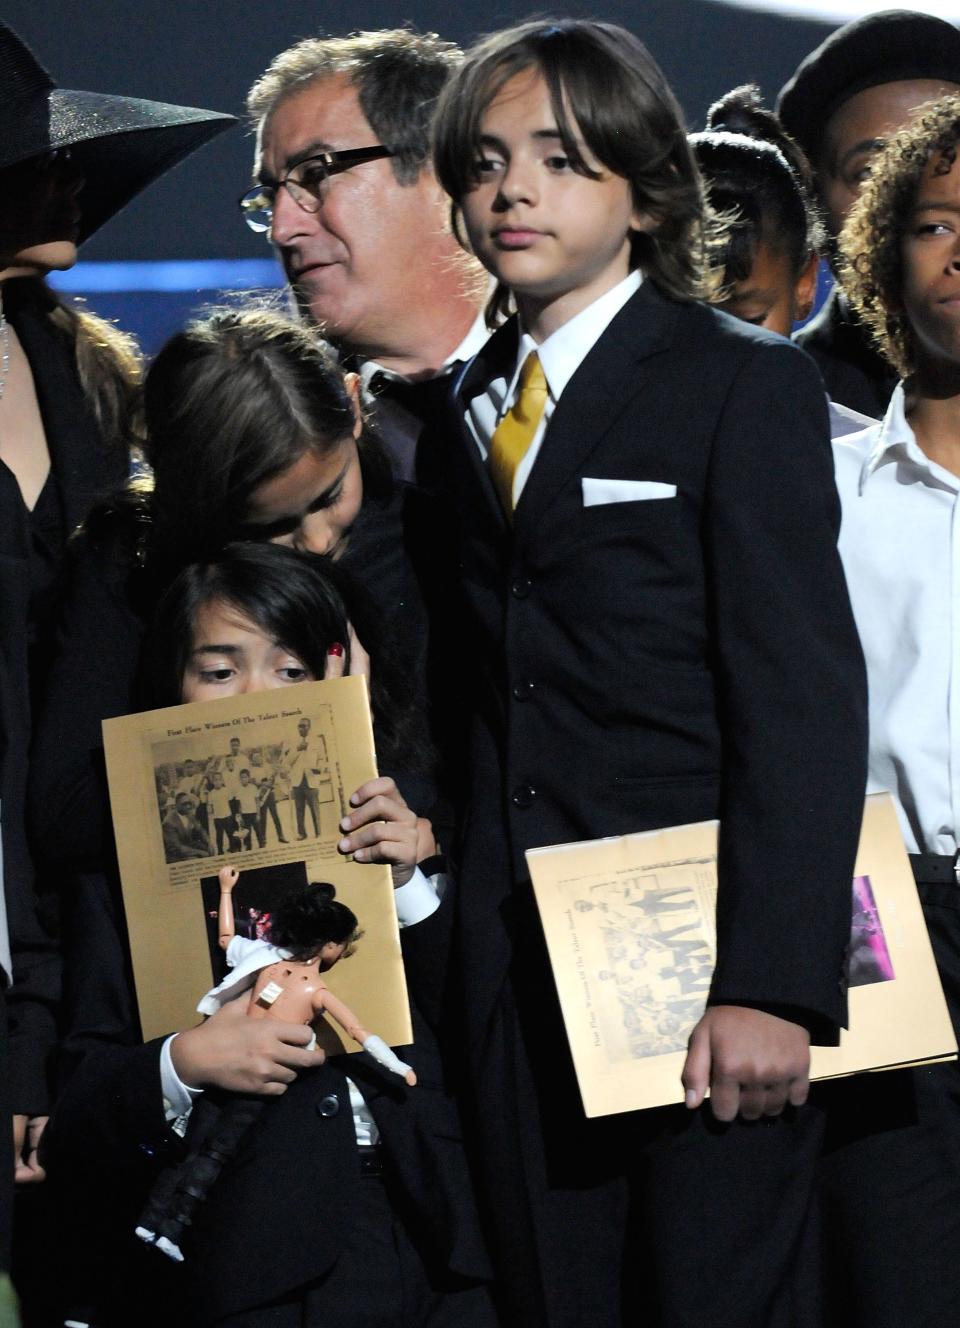 Prince Jackson lors des funérailles de son père en 2009. (Getty Images)